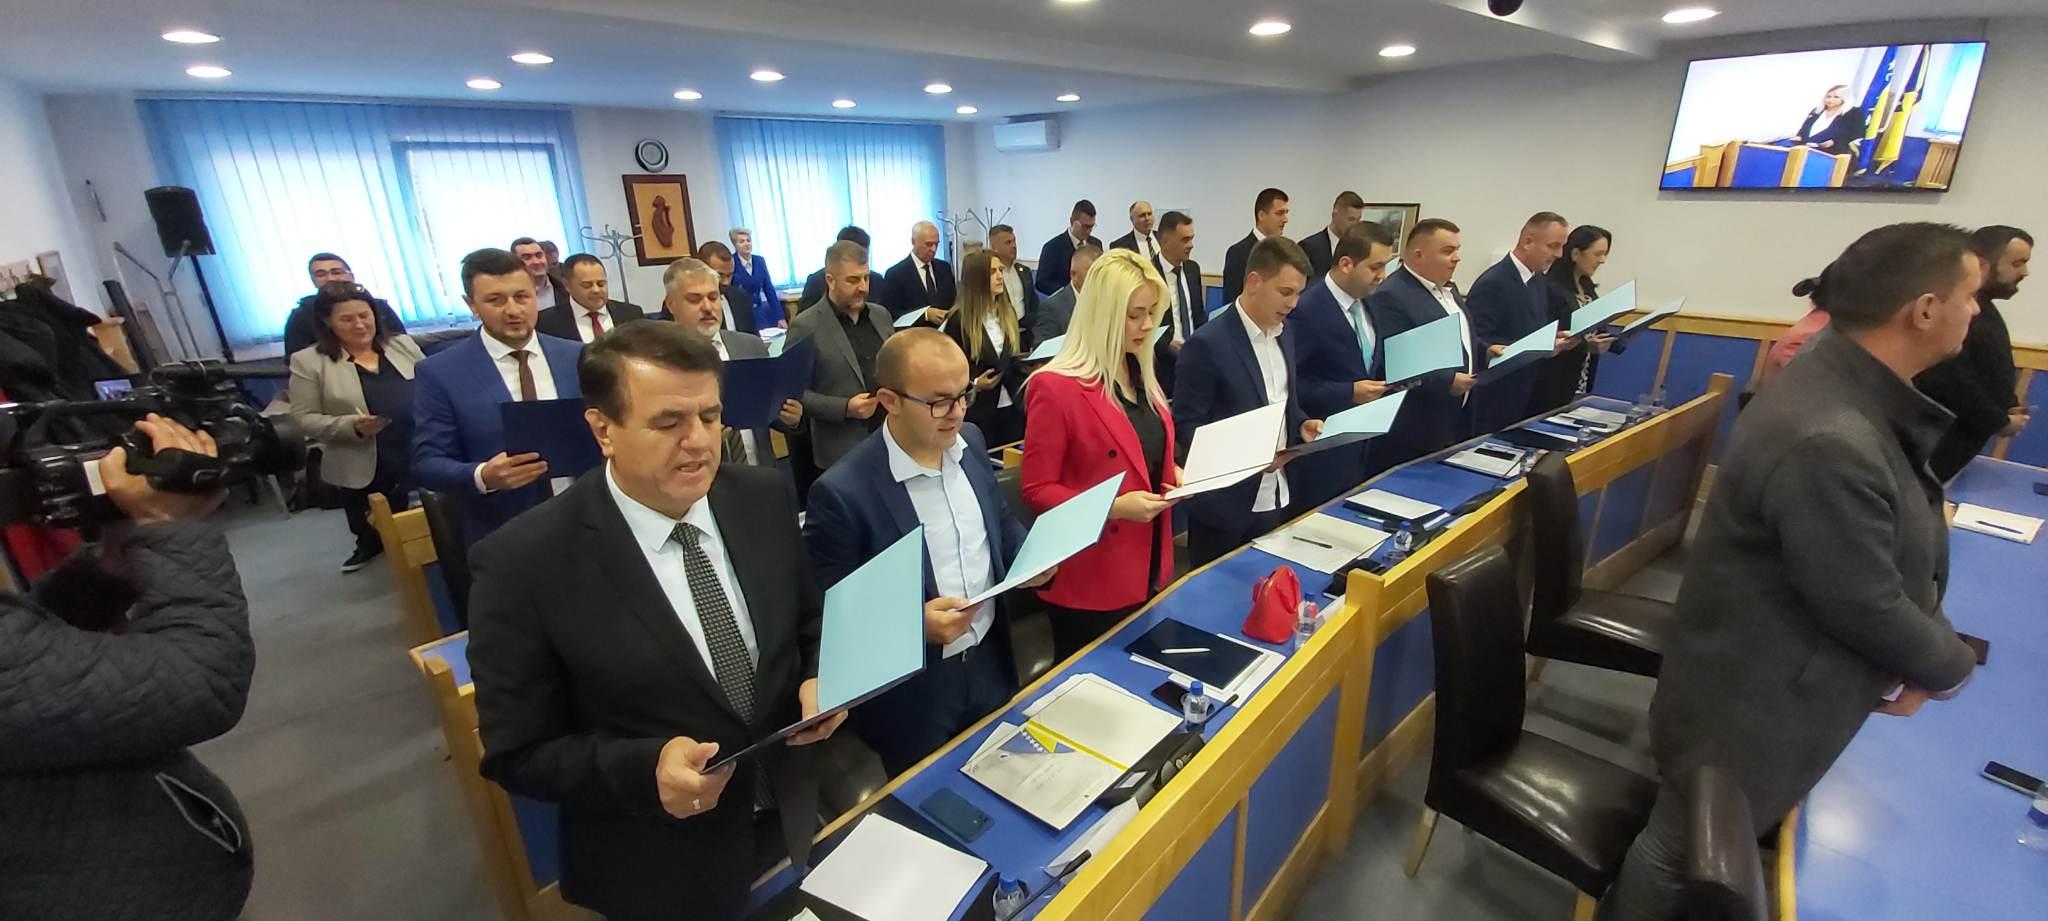 Skupština BPK Goražde: Poslanici preuzeli mandate i dali svečanu izjavu